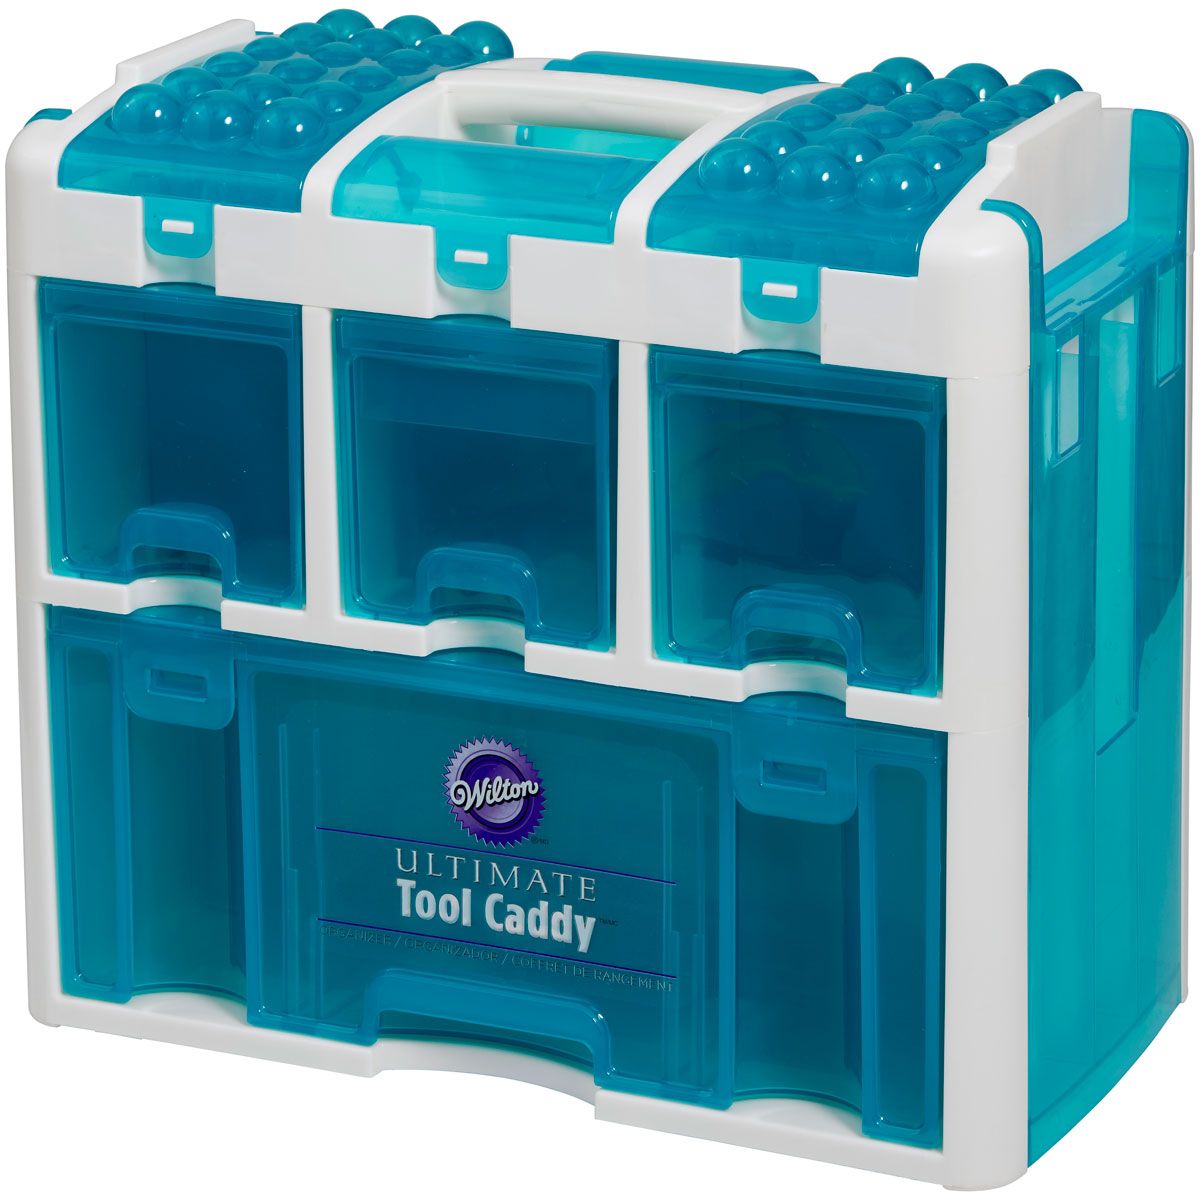 E-shop Wilton Ultimate Tool Caddy - profesionálny organizér - box na tortové pomôcky a náčinie